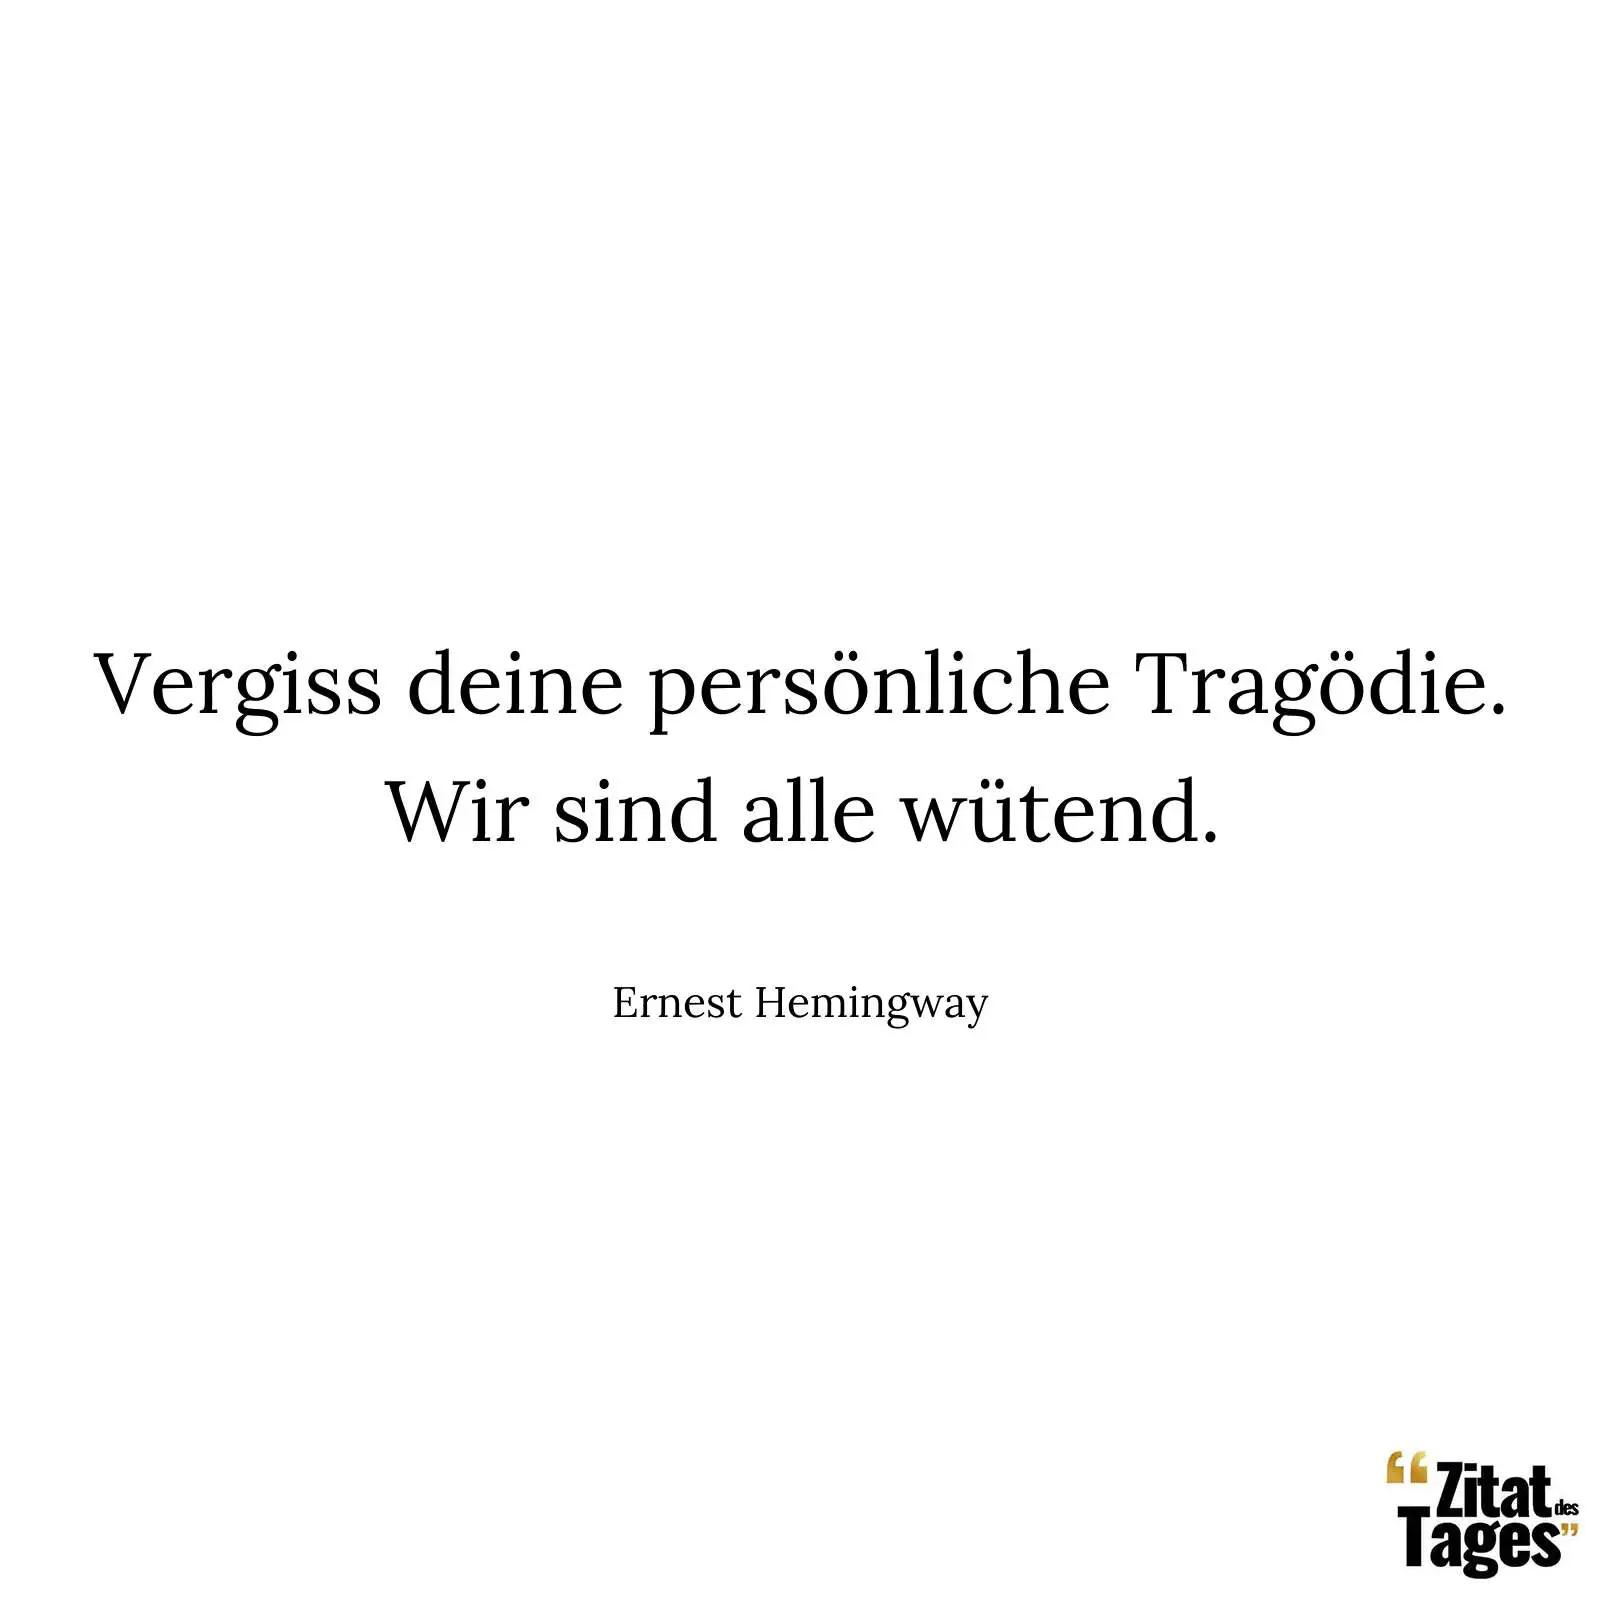 Vergiss deine persönliche Tragödie. Wir sind alle wütend. - Ernest Hemingway